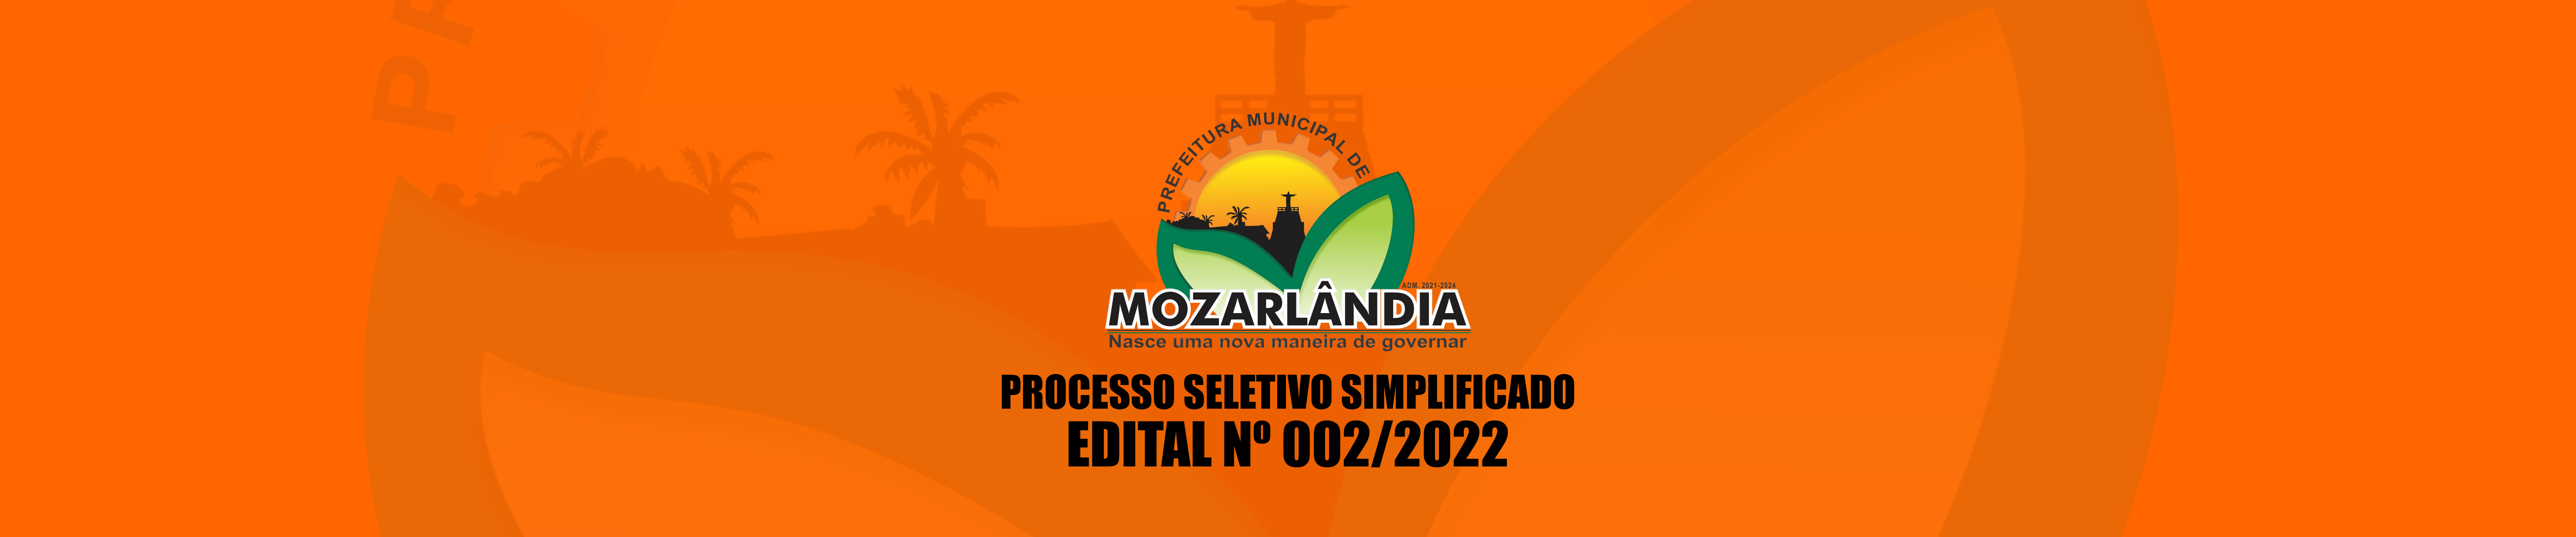 PROCESSO SELETIVO SIMPLIFICADO – EDITAL Nº 002/2022